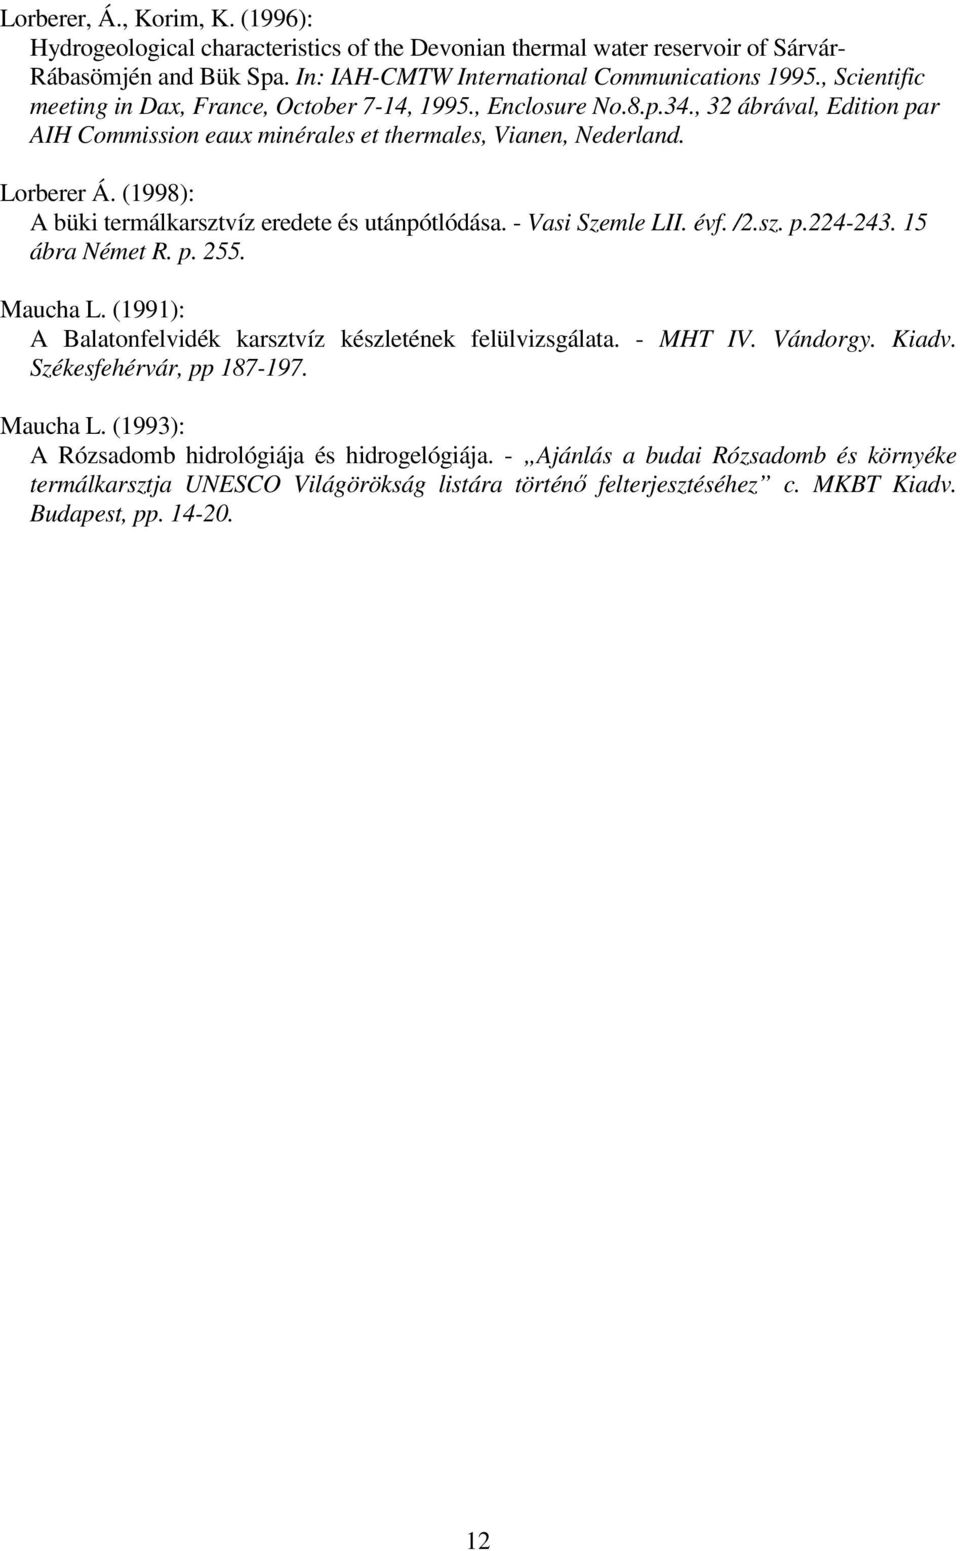 (1998): A büki termálkarsztvíz eredete és utánpótlódása. - Vasi Szemle LII. évf. /2.sz. p.224-243. 15 ábra Német R. p. 255. Maucha L. (1991): A Balatonfelvidék karsztvíz készletének felülvizsgálata.